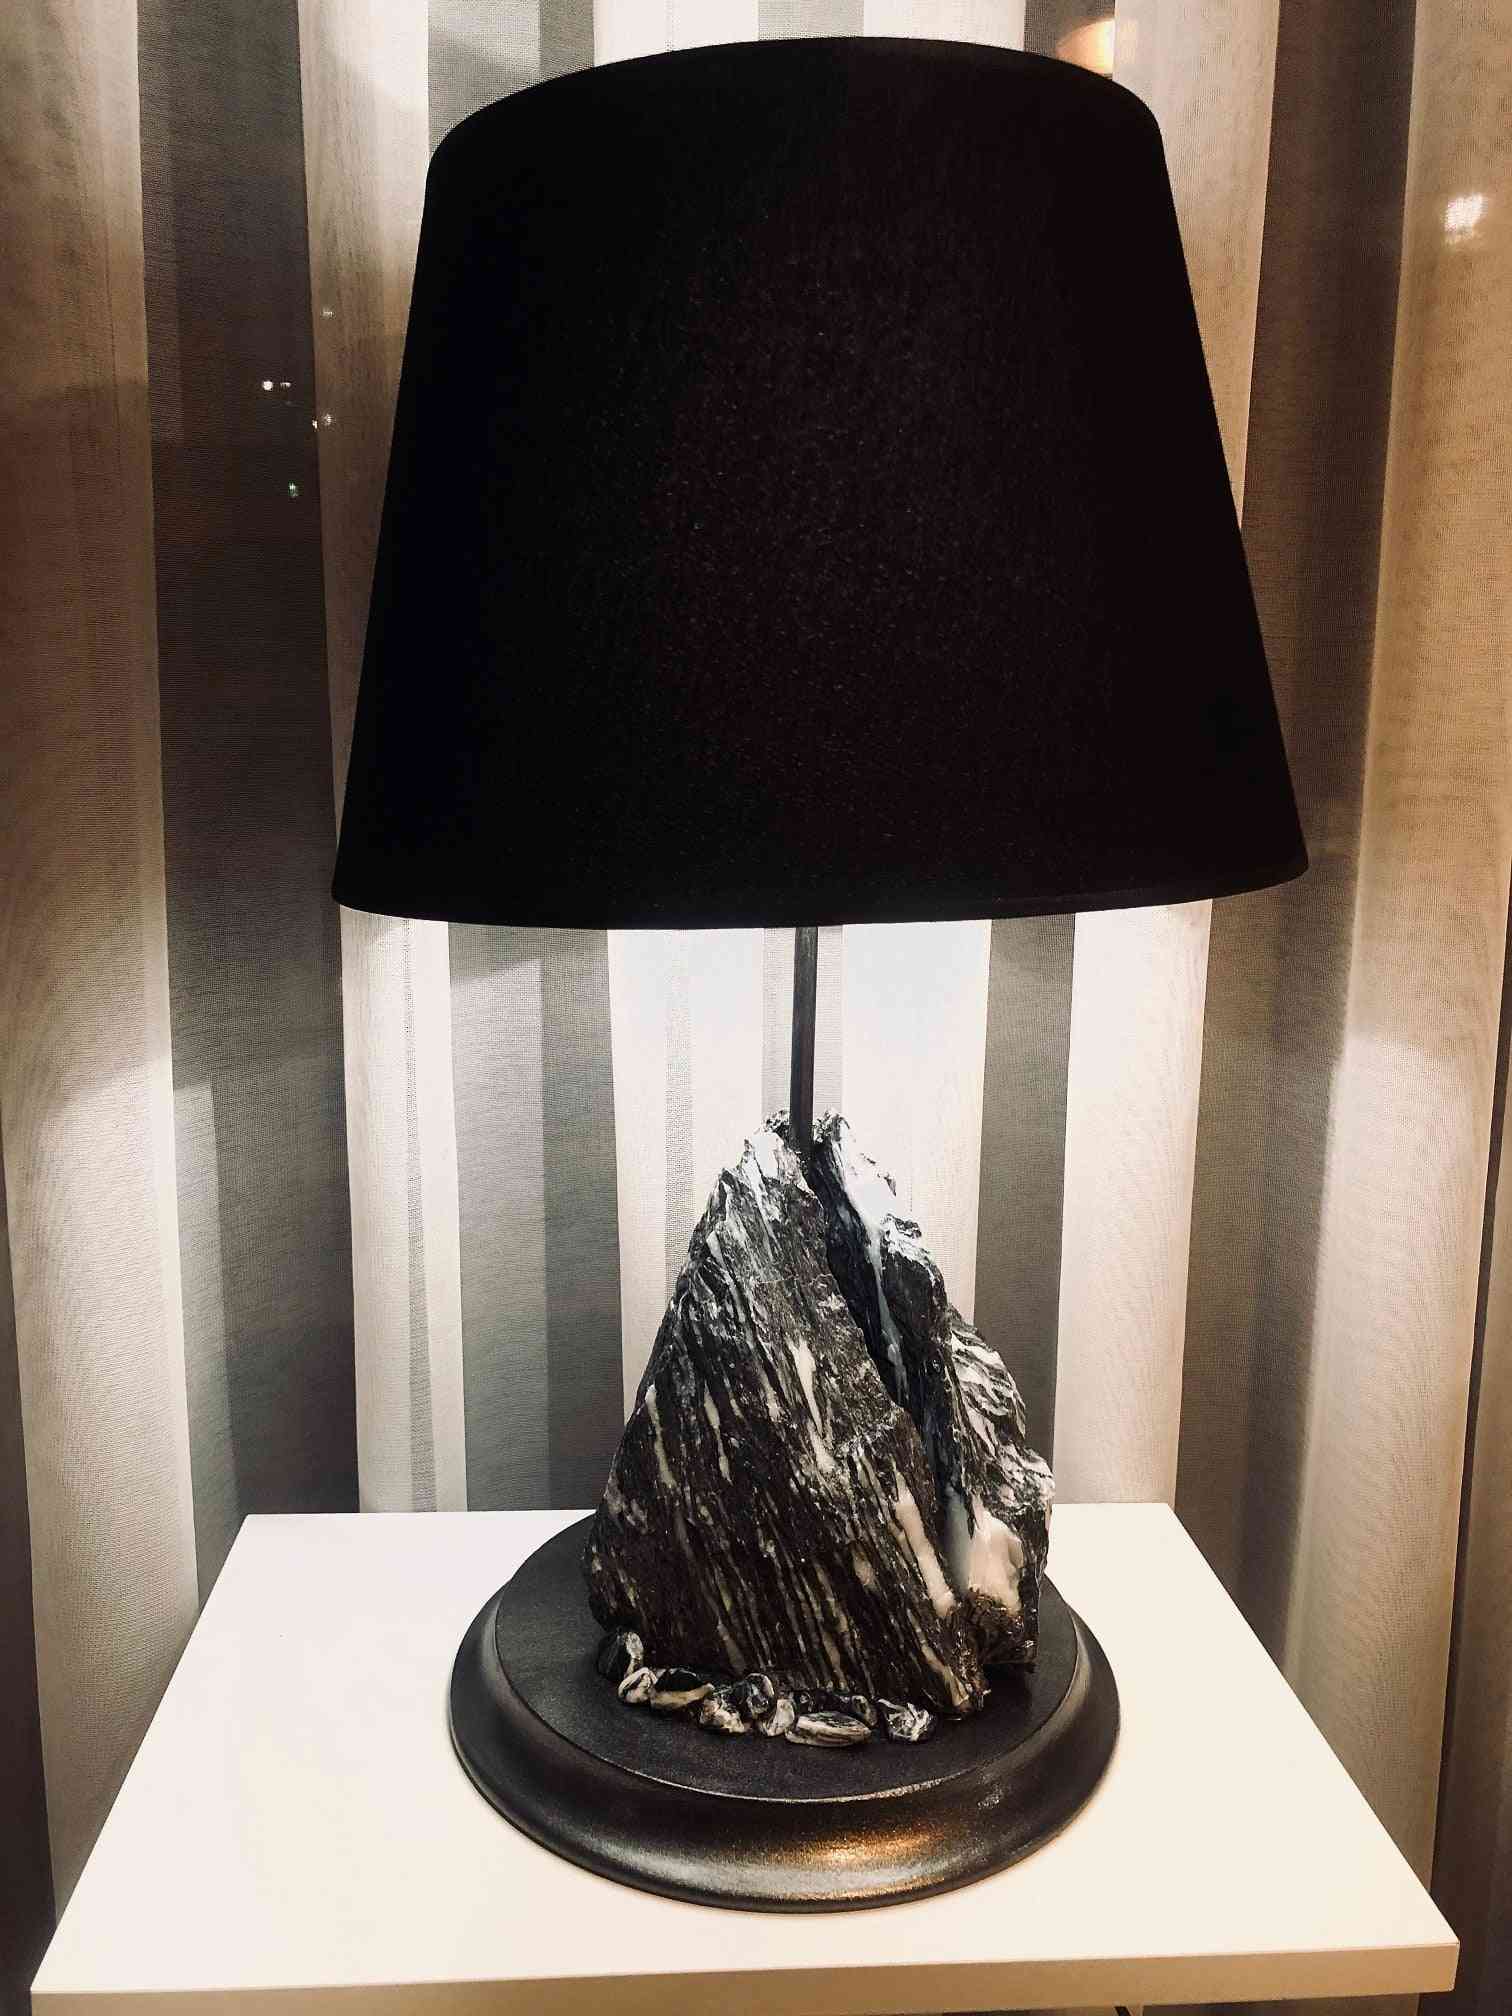 Art Design, Modern Lamp For Home Decoration Room Night Light